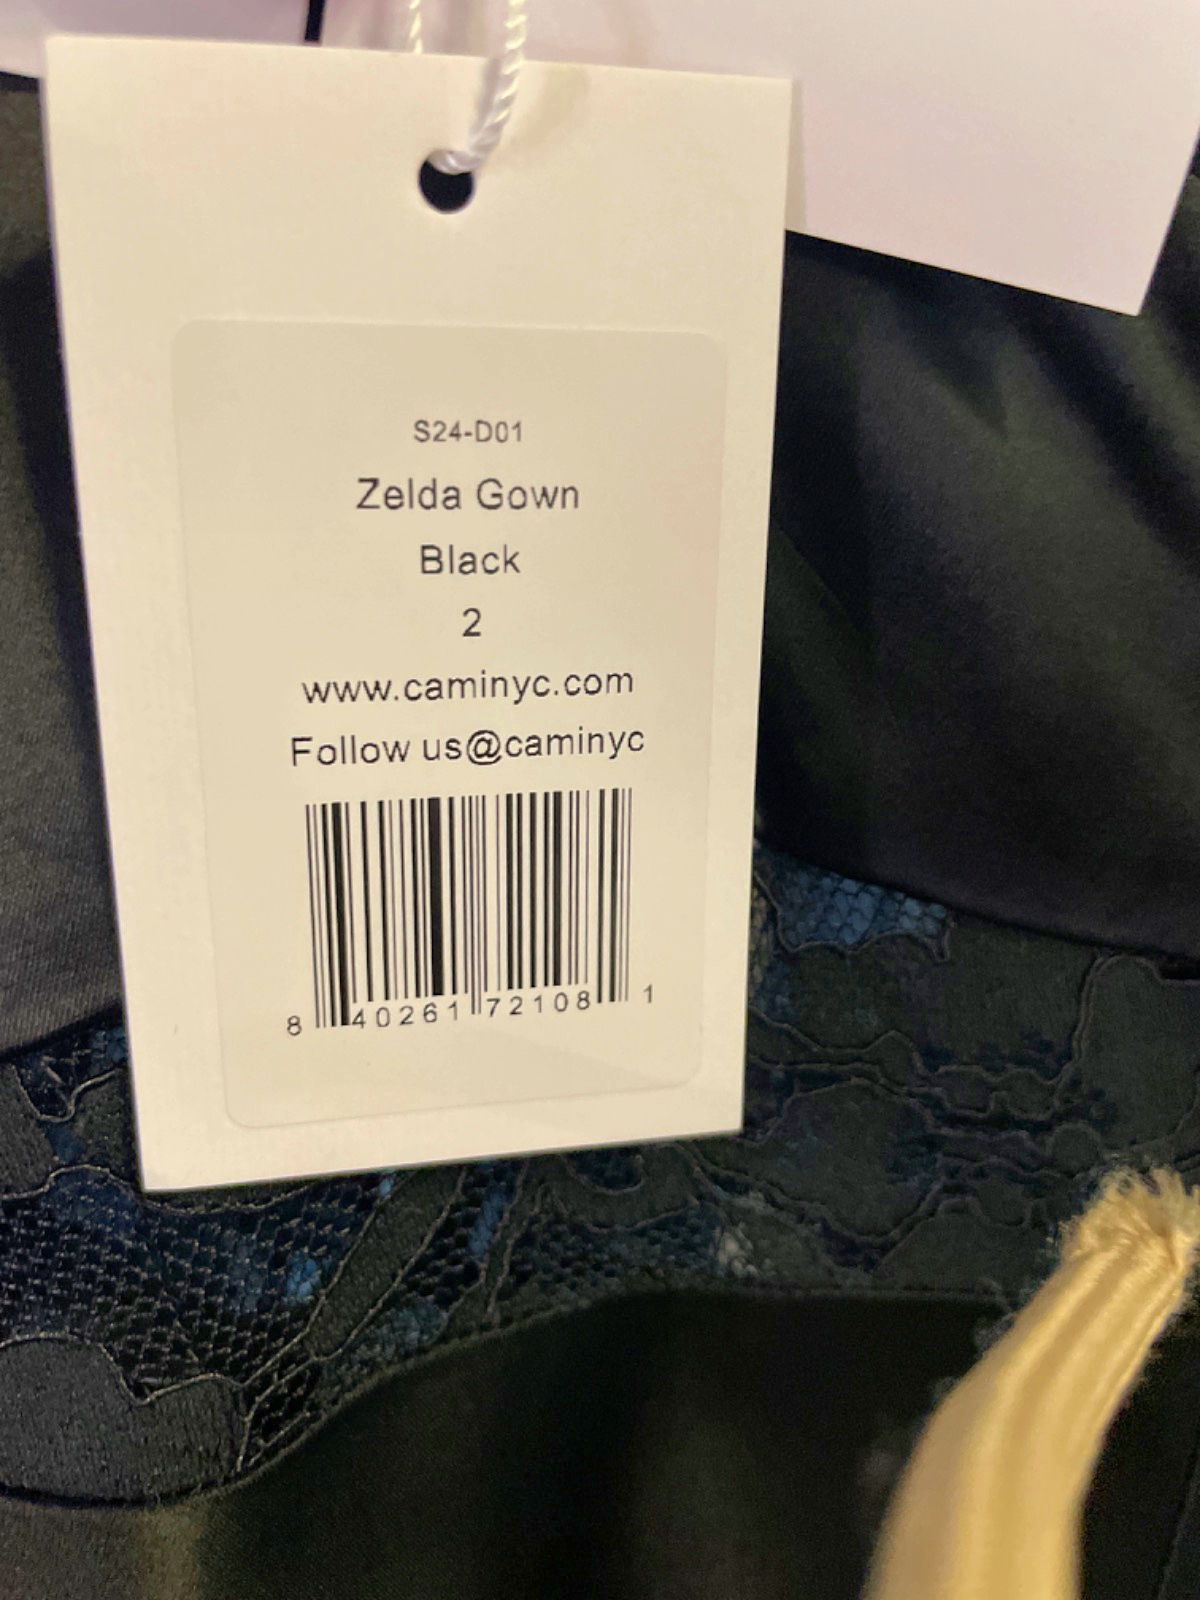 Cami NYC Black Zelda Gown UK 6